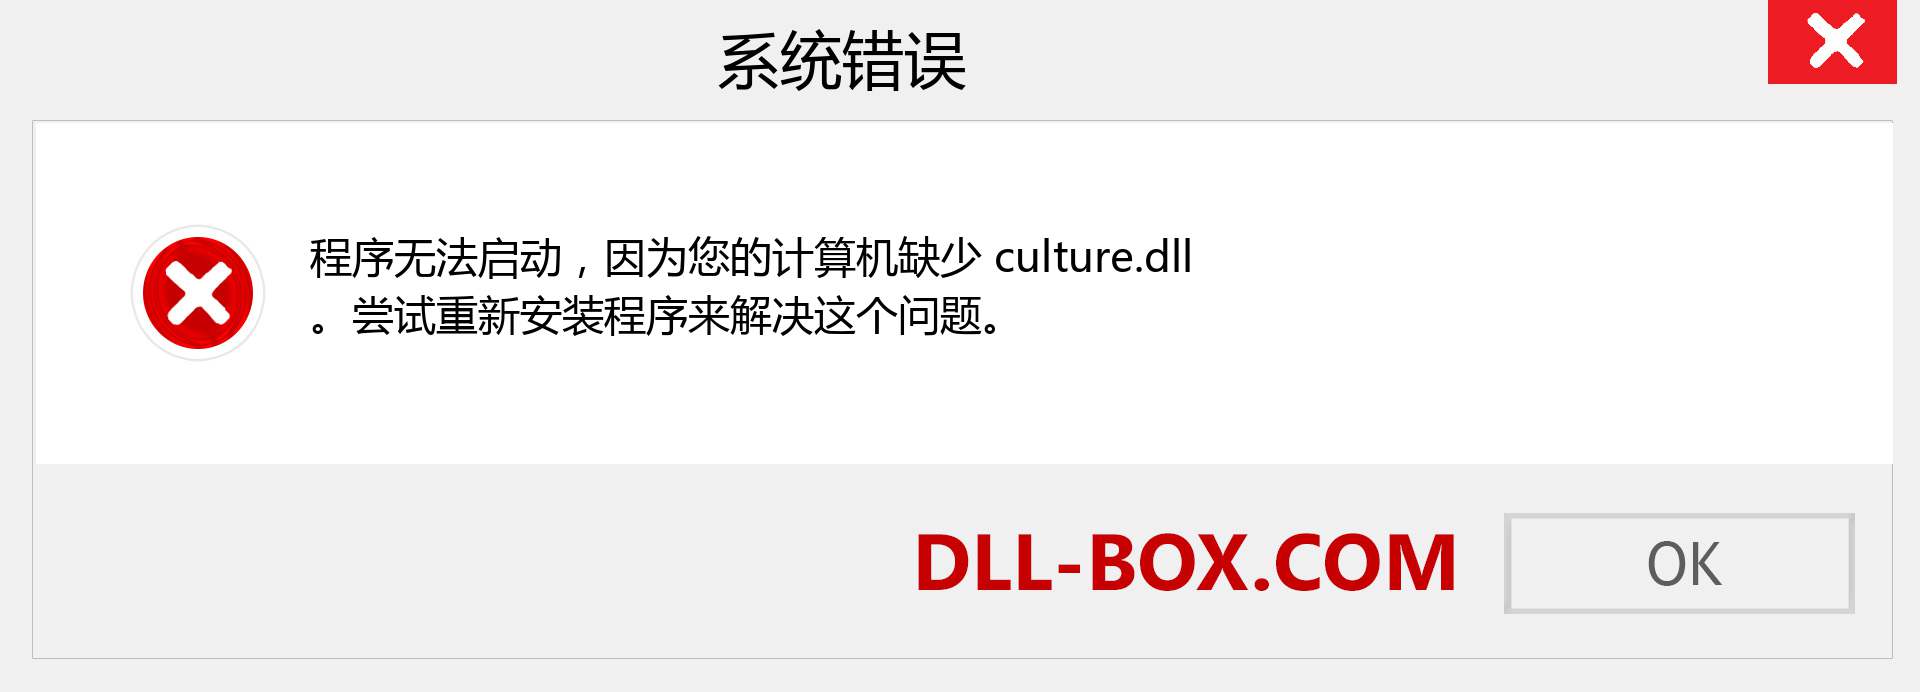 culture.dll 文件丢失？。 适用于 Windows 7、8、10 的下载 - 修复 Windows、照片、图像上的 culture dll 丢失错误